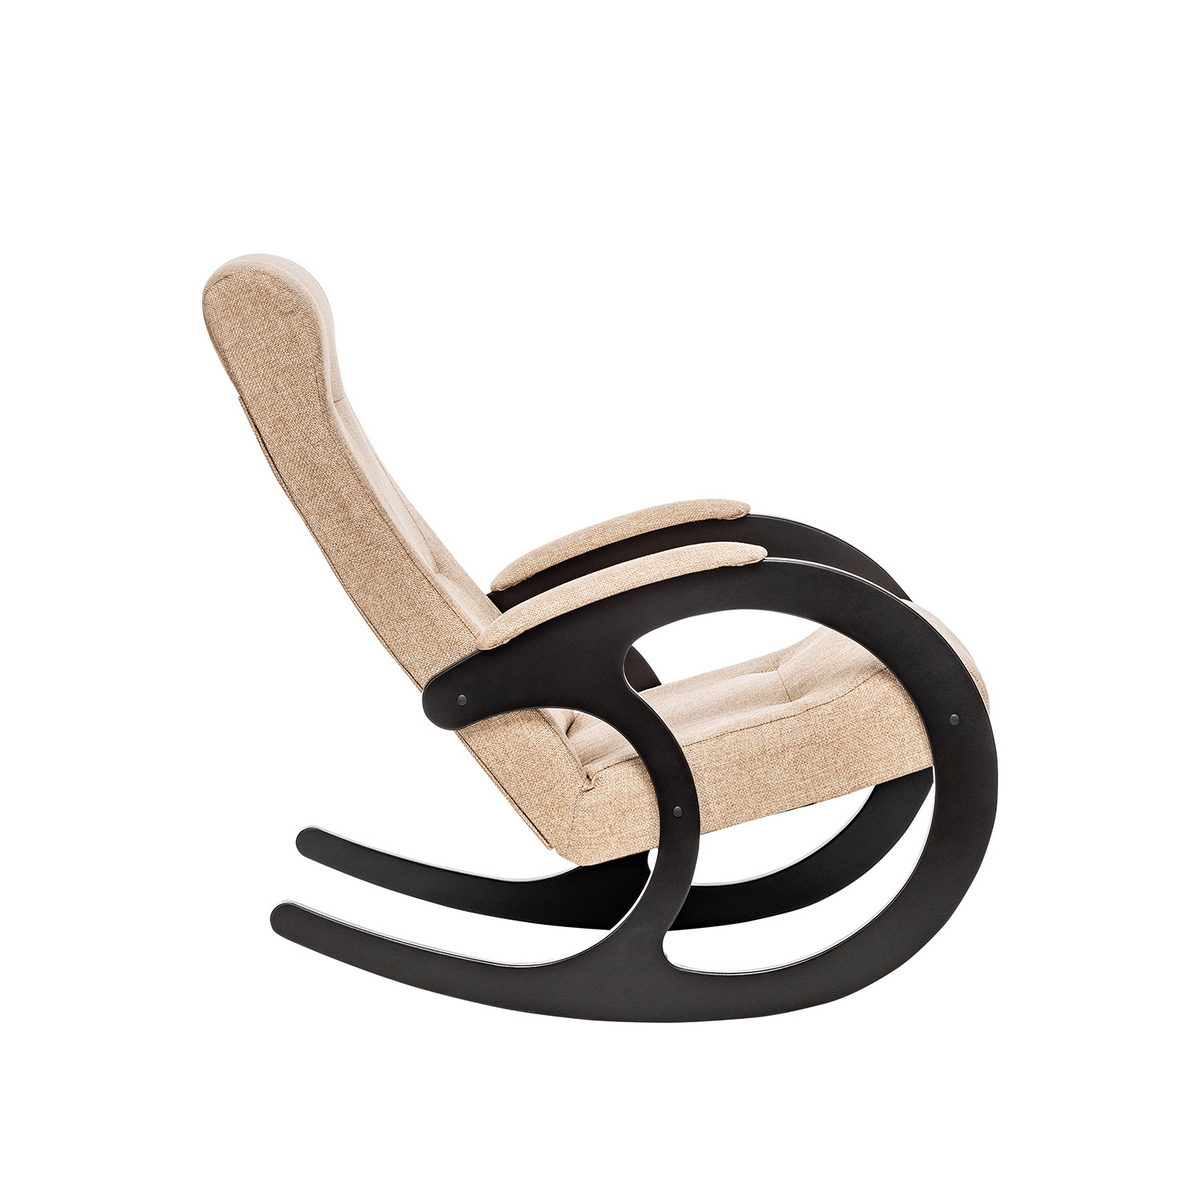 Кресло-качалка Модель 3 (Импэкс). Цвет каркаса: Венге; Цвет обивки: Malta 03 А